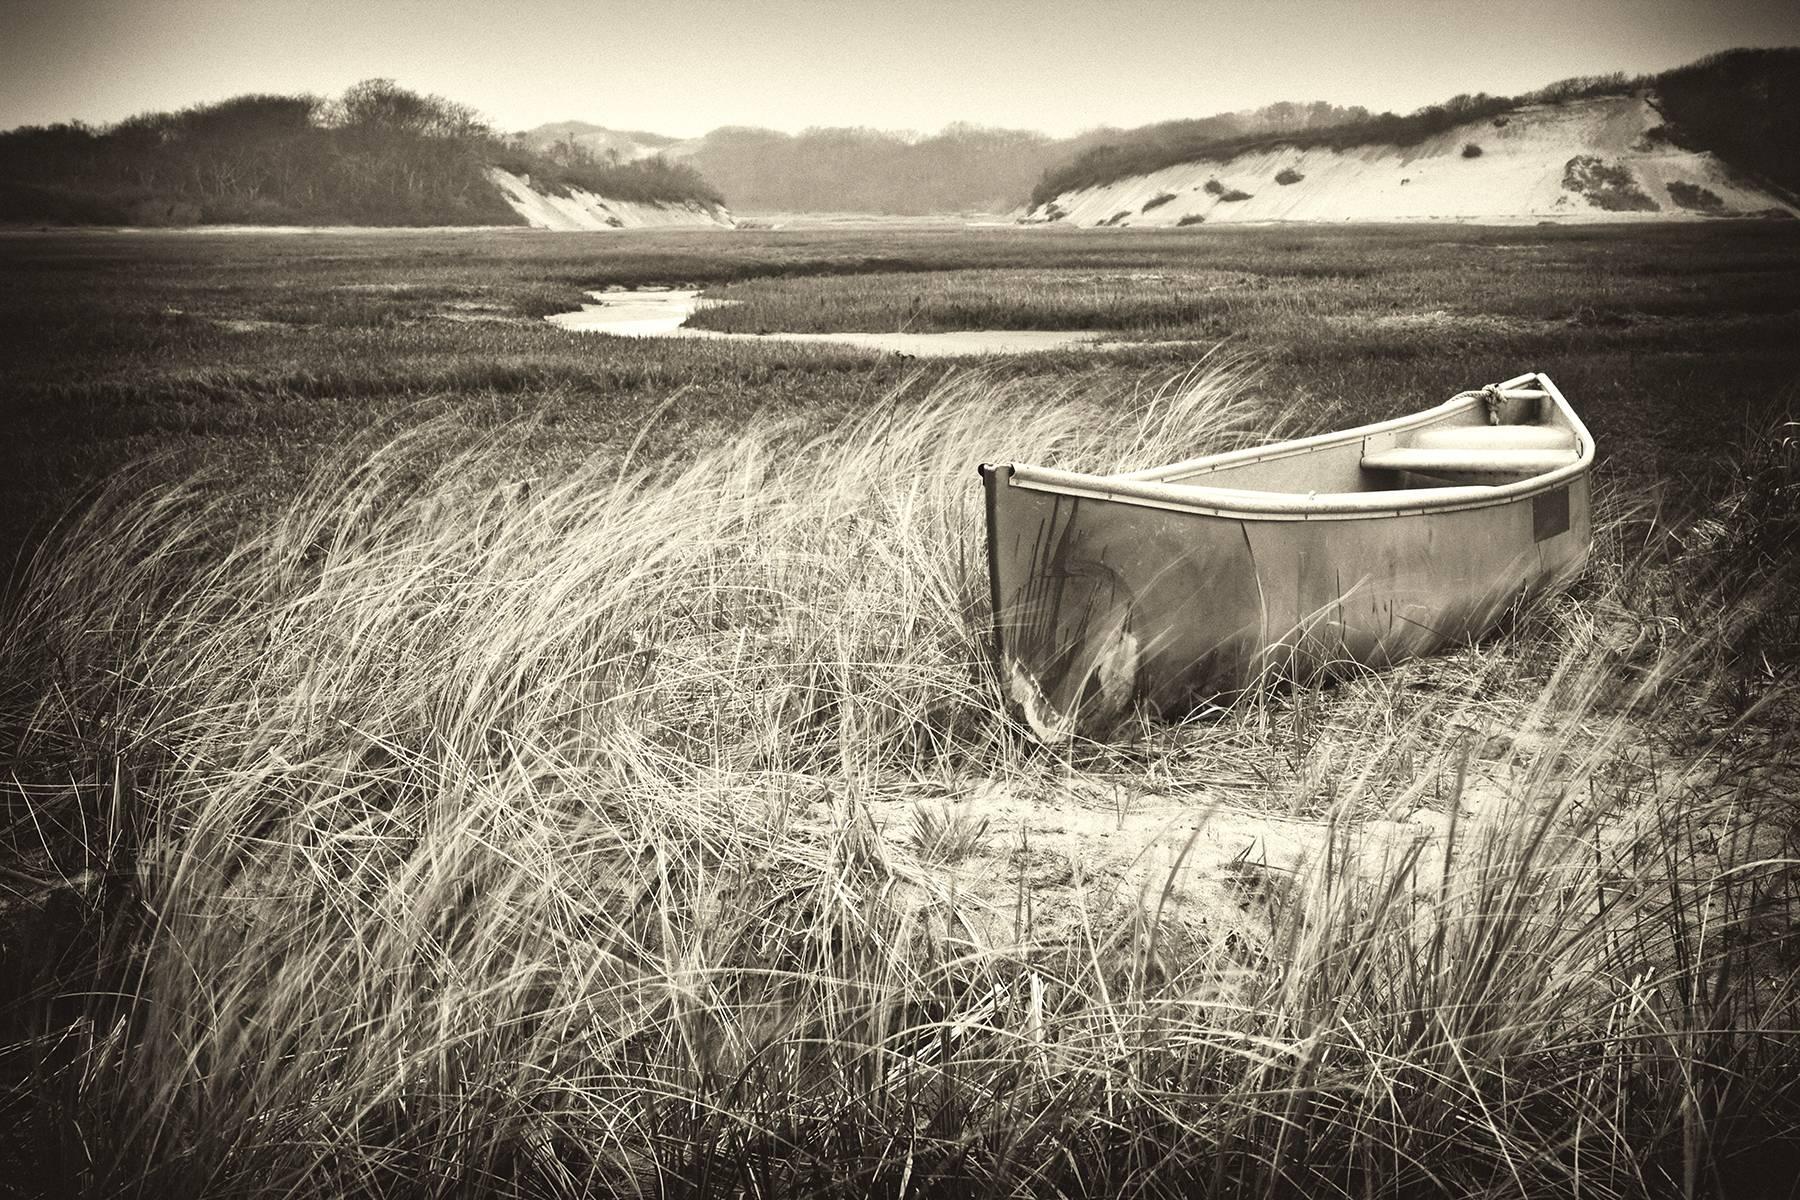 Black and White Photograph Rebecca Skinner - "Quiet Morning", paysage, noir et blanc, canoë, marais, Cape Cod, photographie.